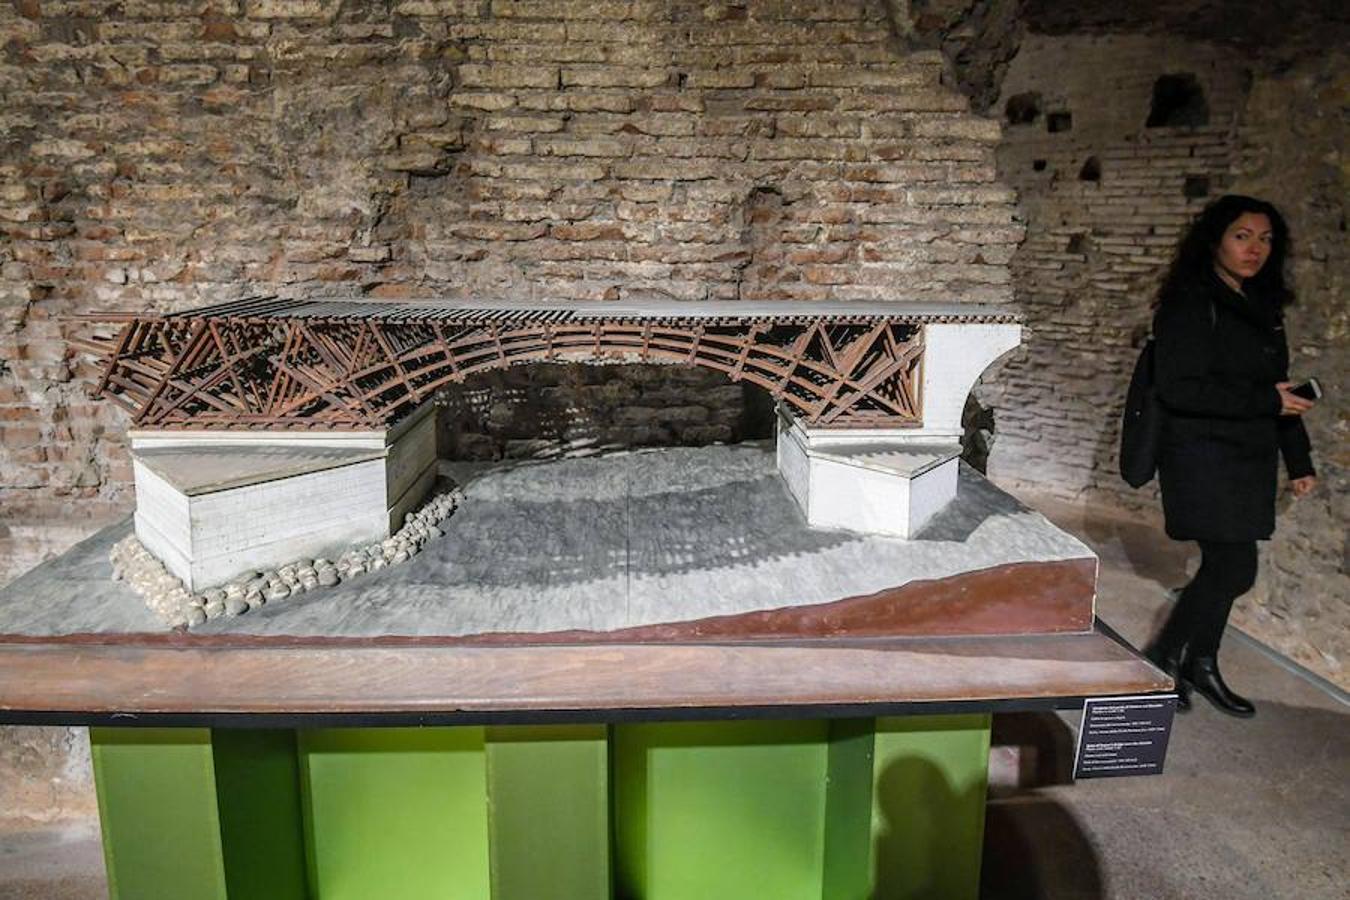 Vista de la maqueta de plástico "Puente de Trajano sobre el Danubio" a escala 1:50, obra arquitectónica fechada entre 103-105 d.C